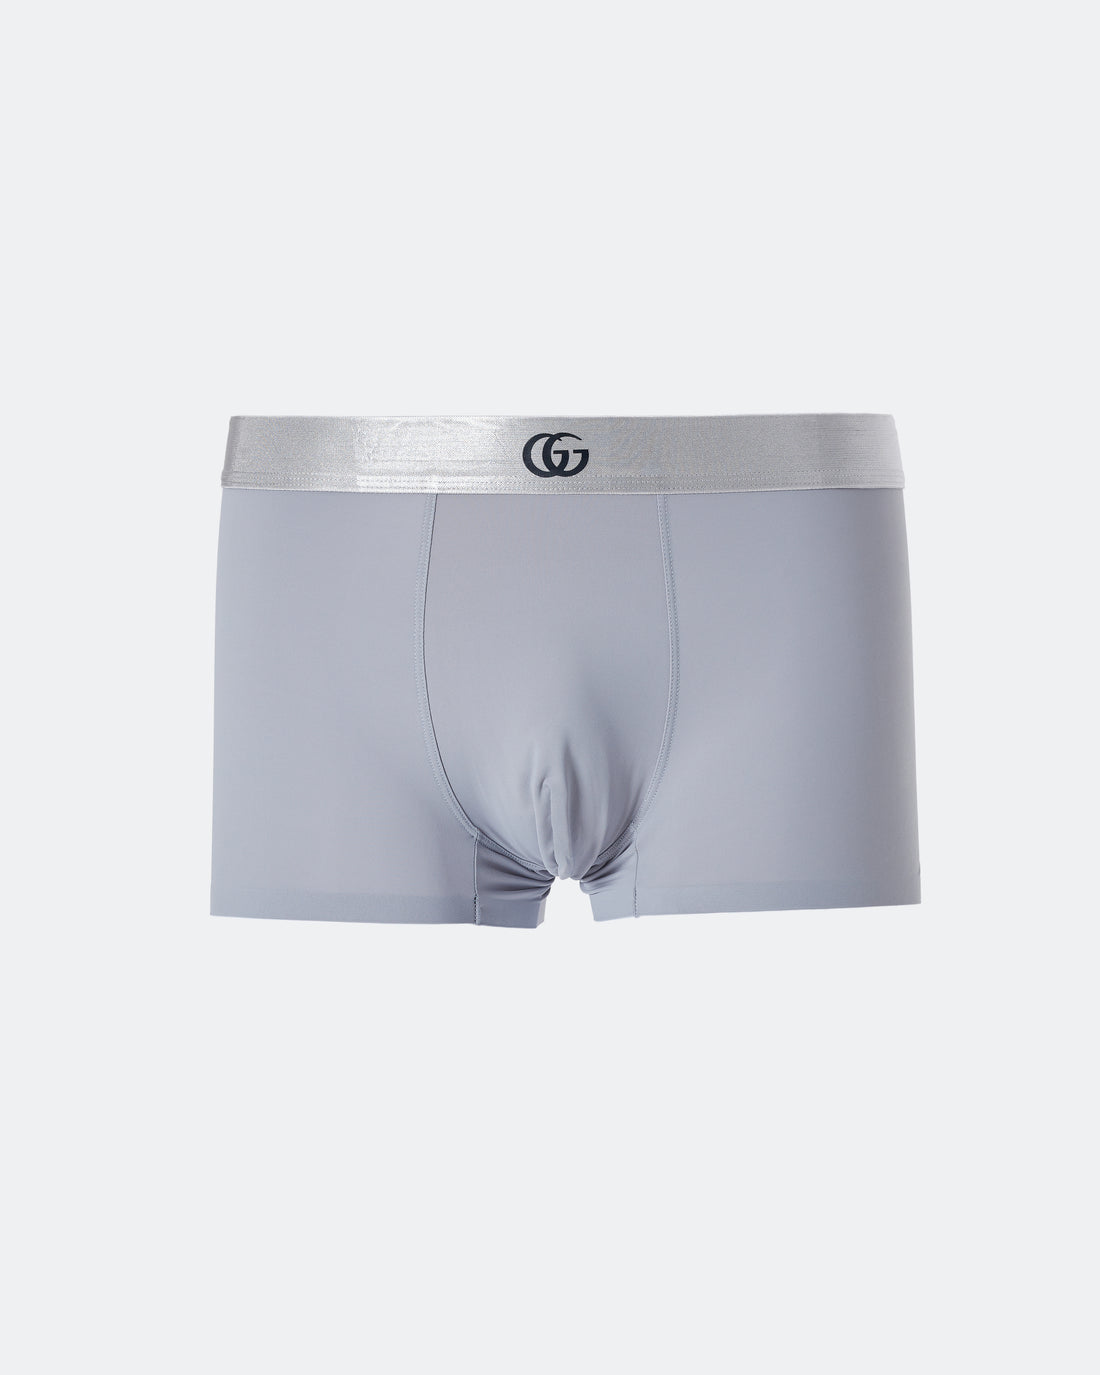 GUC Logo Waistband Printed Men Grey Underwear 6.50